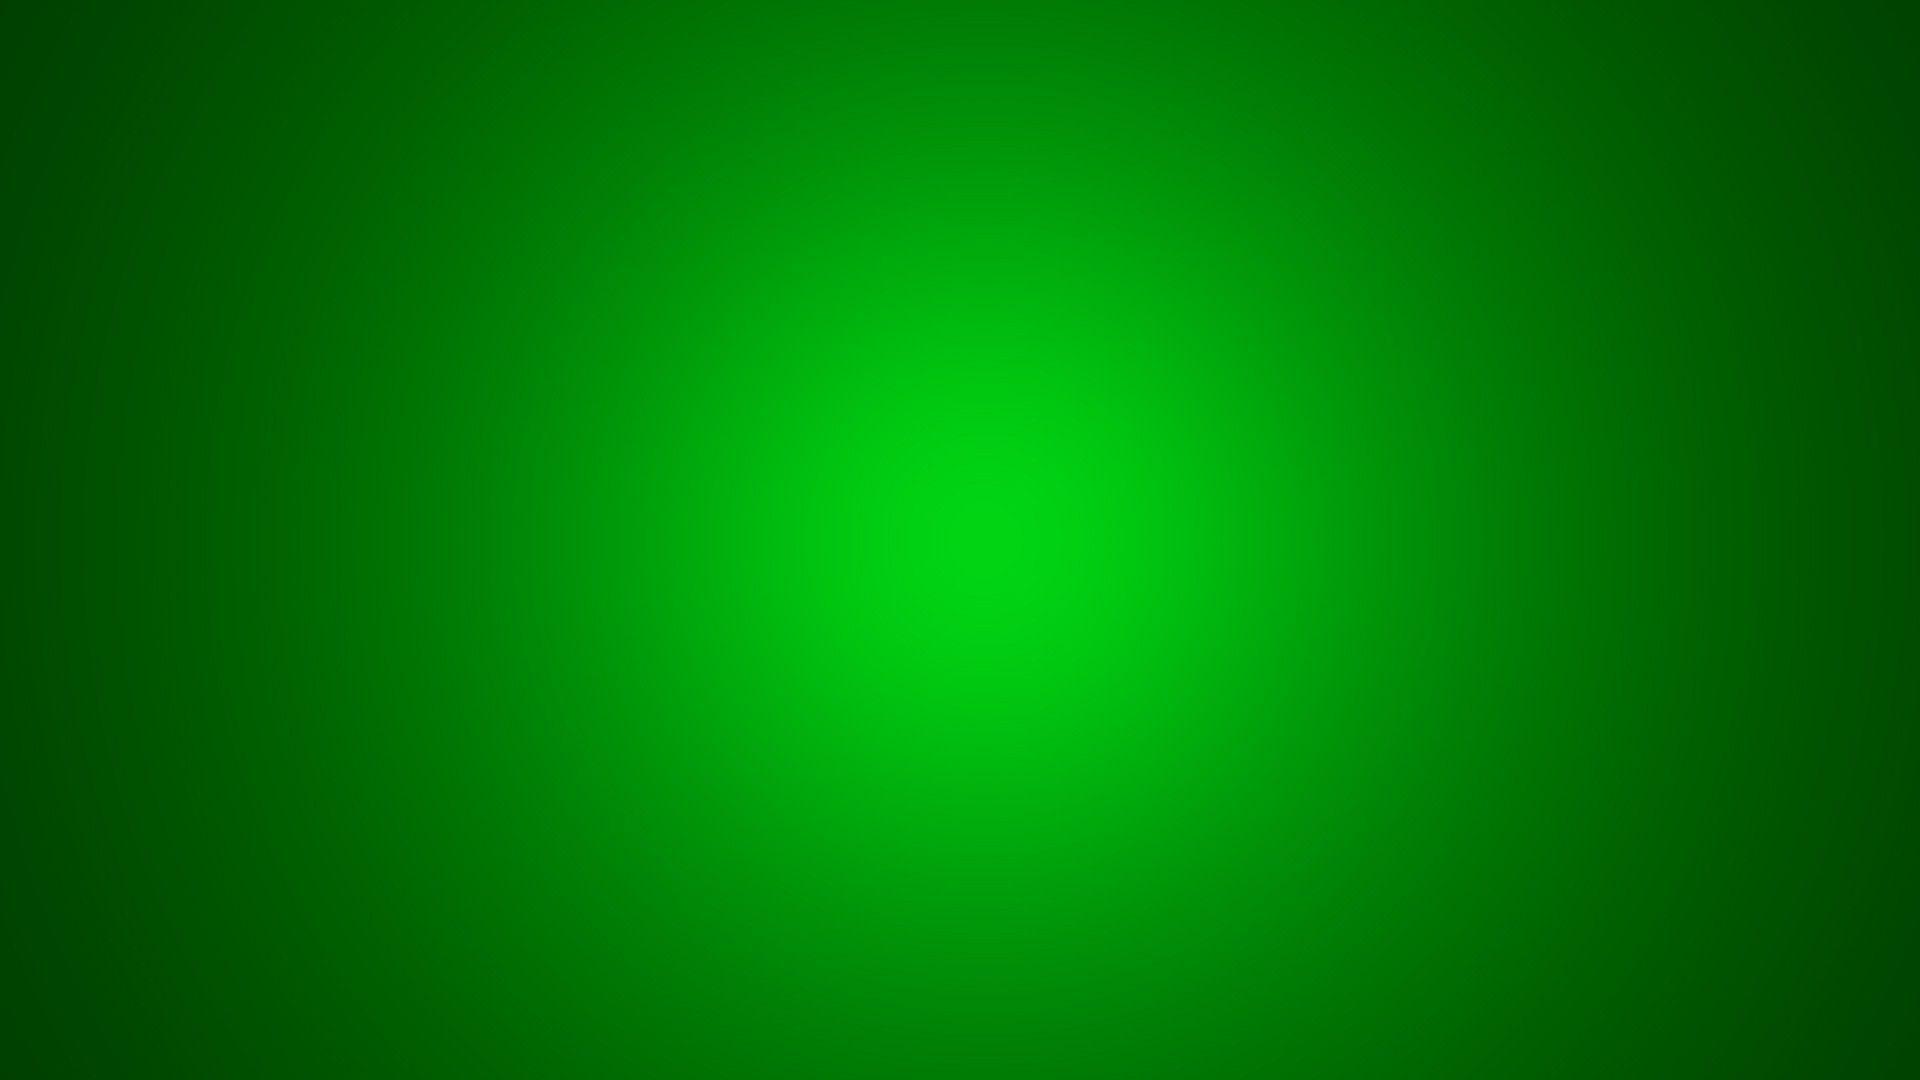 Green Wallpapers - Top Những Hình Ảnh Đẹp. Tựa như cái tên của nó, bộ sưu tập hình nền này đem đến những hình ảnh đẹp nhất với tông màu xanh lá cây. Với chất lượng hình ảnh tuyệt vời và nhiều tùy chọn đa dạng, bạn không thể bỏ qua cơ hội để tải về những bức ảnh đẹp này cho máy tính của mình.